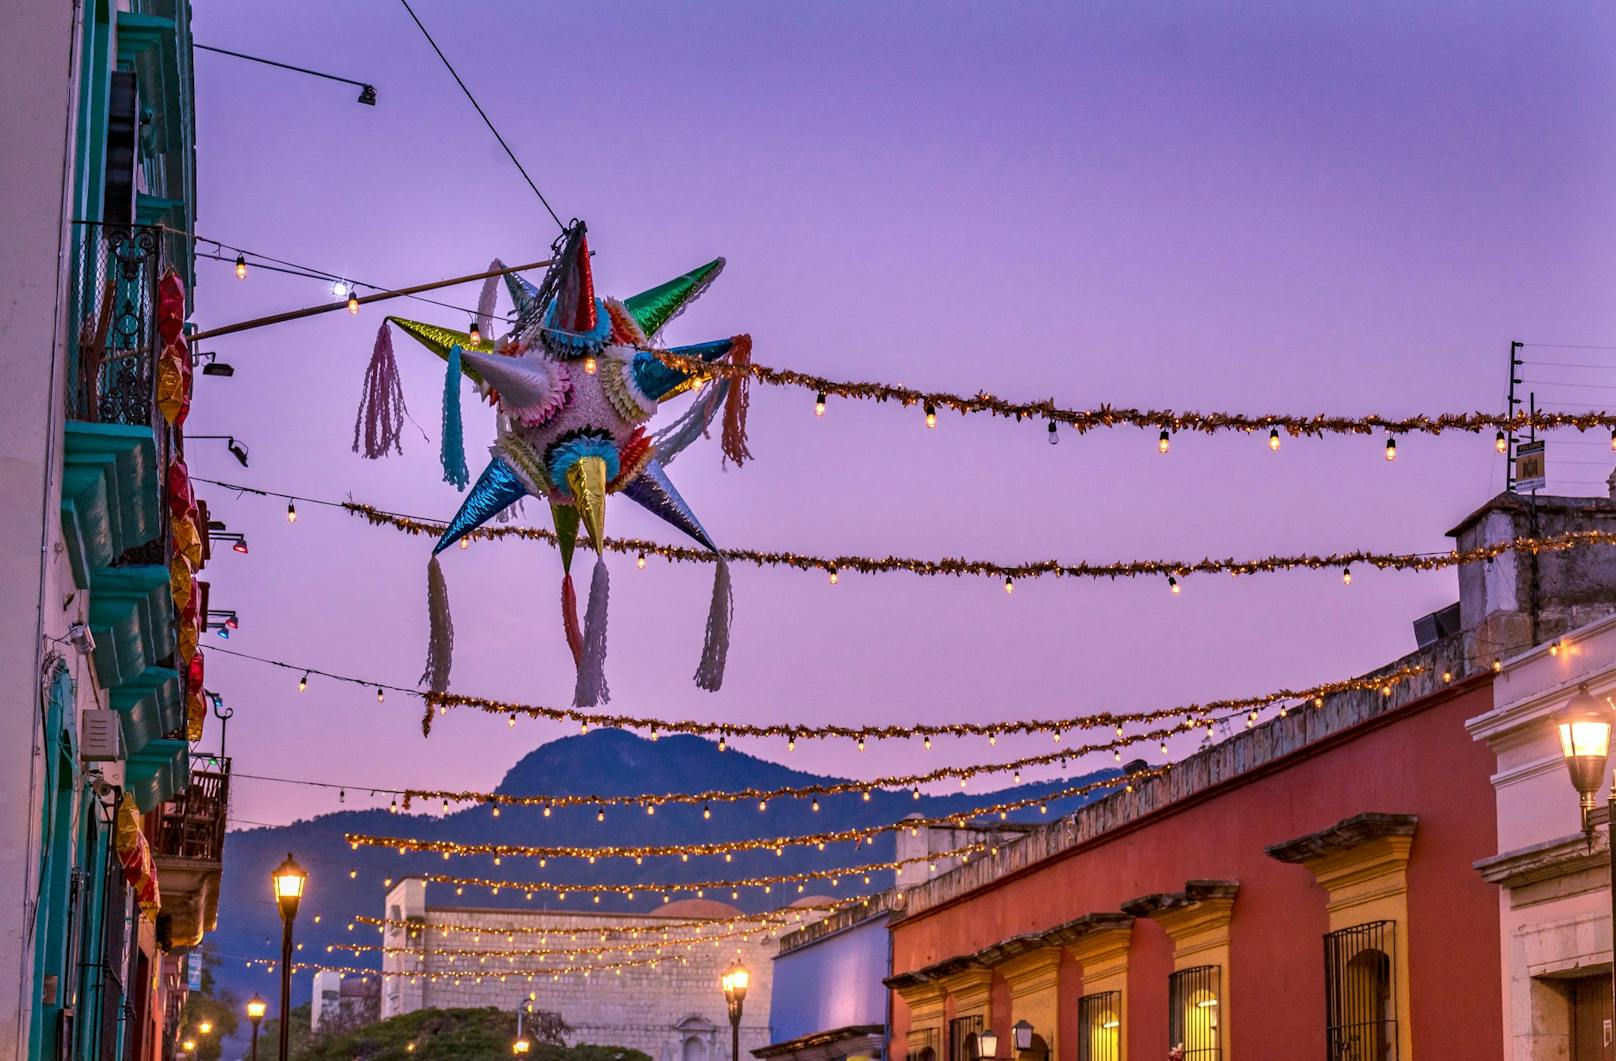 Die Weihnachtszeit fällt in <strong>Mexiko </strong>saisonal in den Sommer. Am 24. Dezember feiert man im Kreise der Familie und isst Fisch oder Truthahn. Kurz vor Mitternacht wird die Jesuspuppe zu den restlichen Figuren in der Weihnachtskrippe gelegt. Am Morgen des 25. Dezember findet die Bescherung statt. In einigen Regionen darf man die Geschenke erst am 6. Jänner öffnen. Ein typisch mexikanischer Weihnachtsbrauch ist das Zerschlagen der Piñata, eine Papp-Figur, in der sich Süßigkeiten, Früchte und Nüsse befinden.&nbsp;